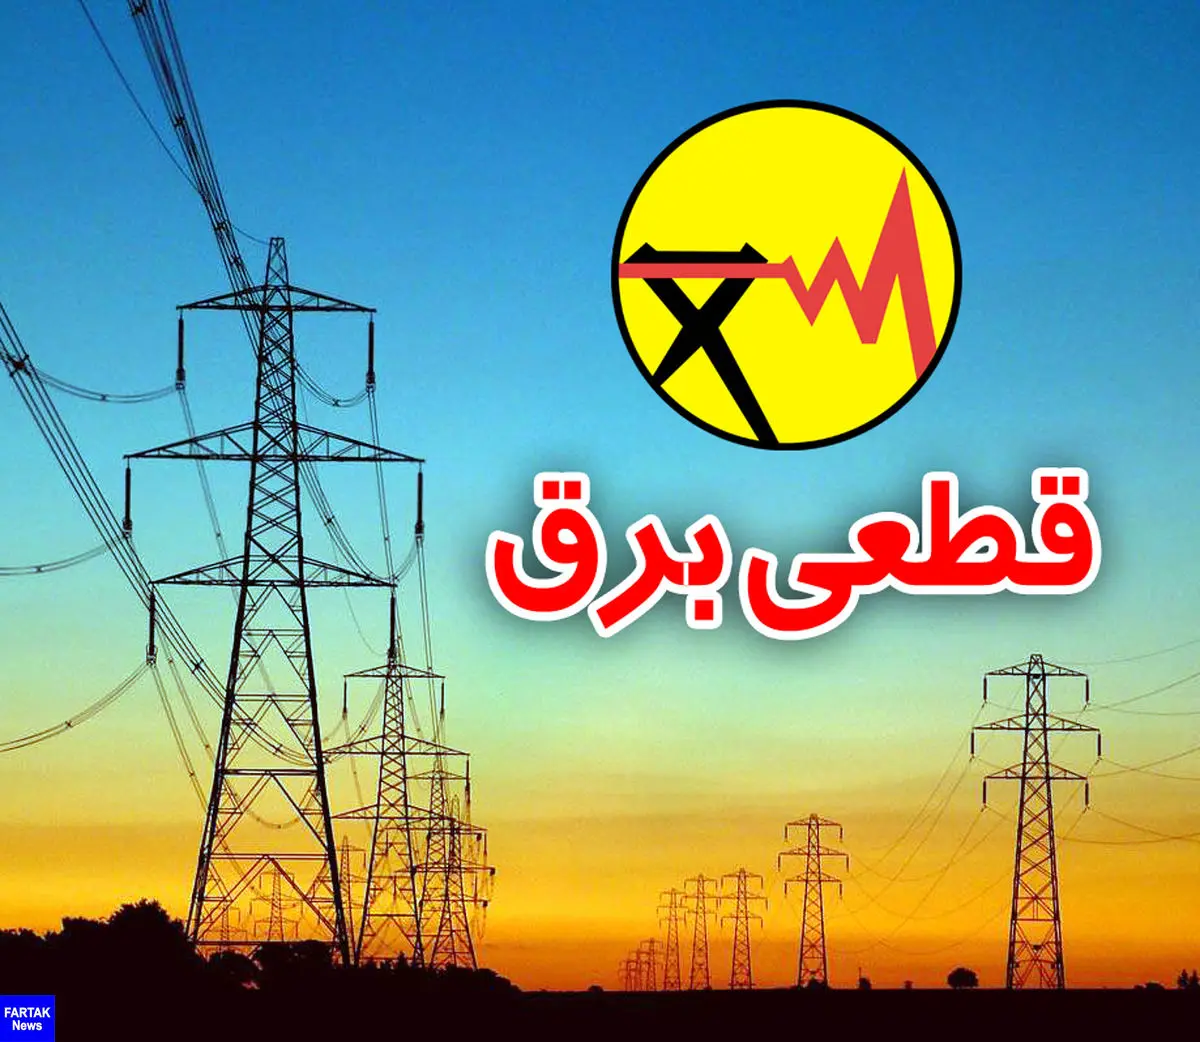 اعلام ساعات قطعی برق در شهر کرمانشاه در هفته جاری  